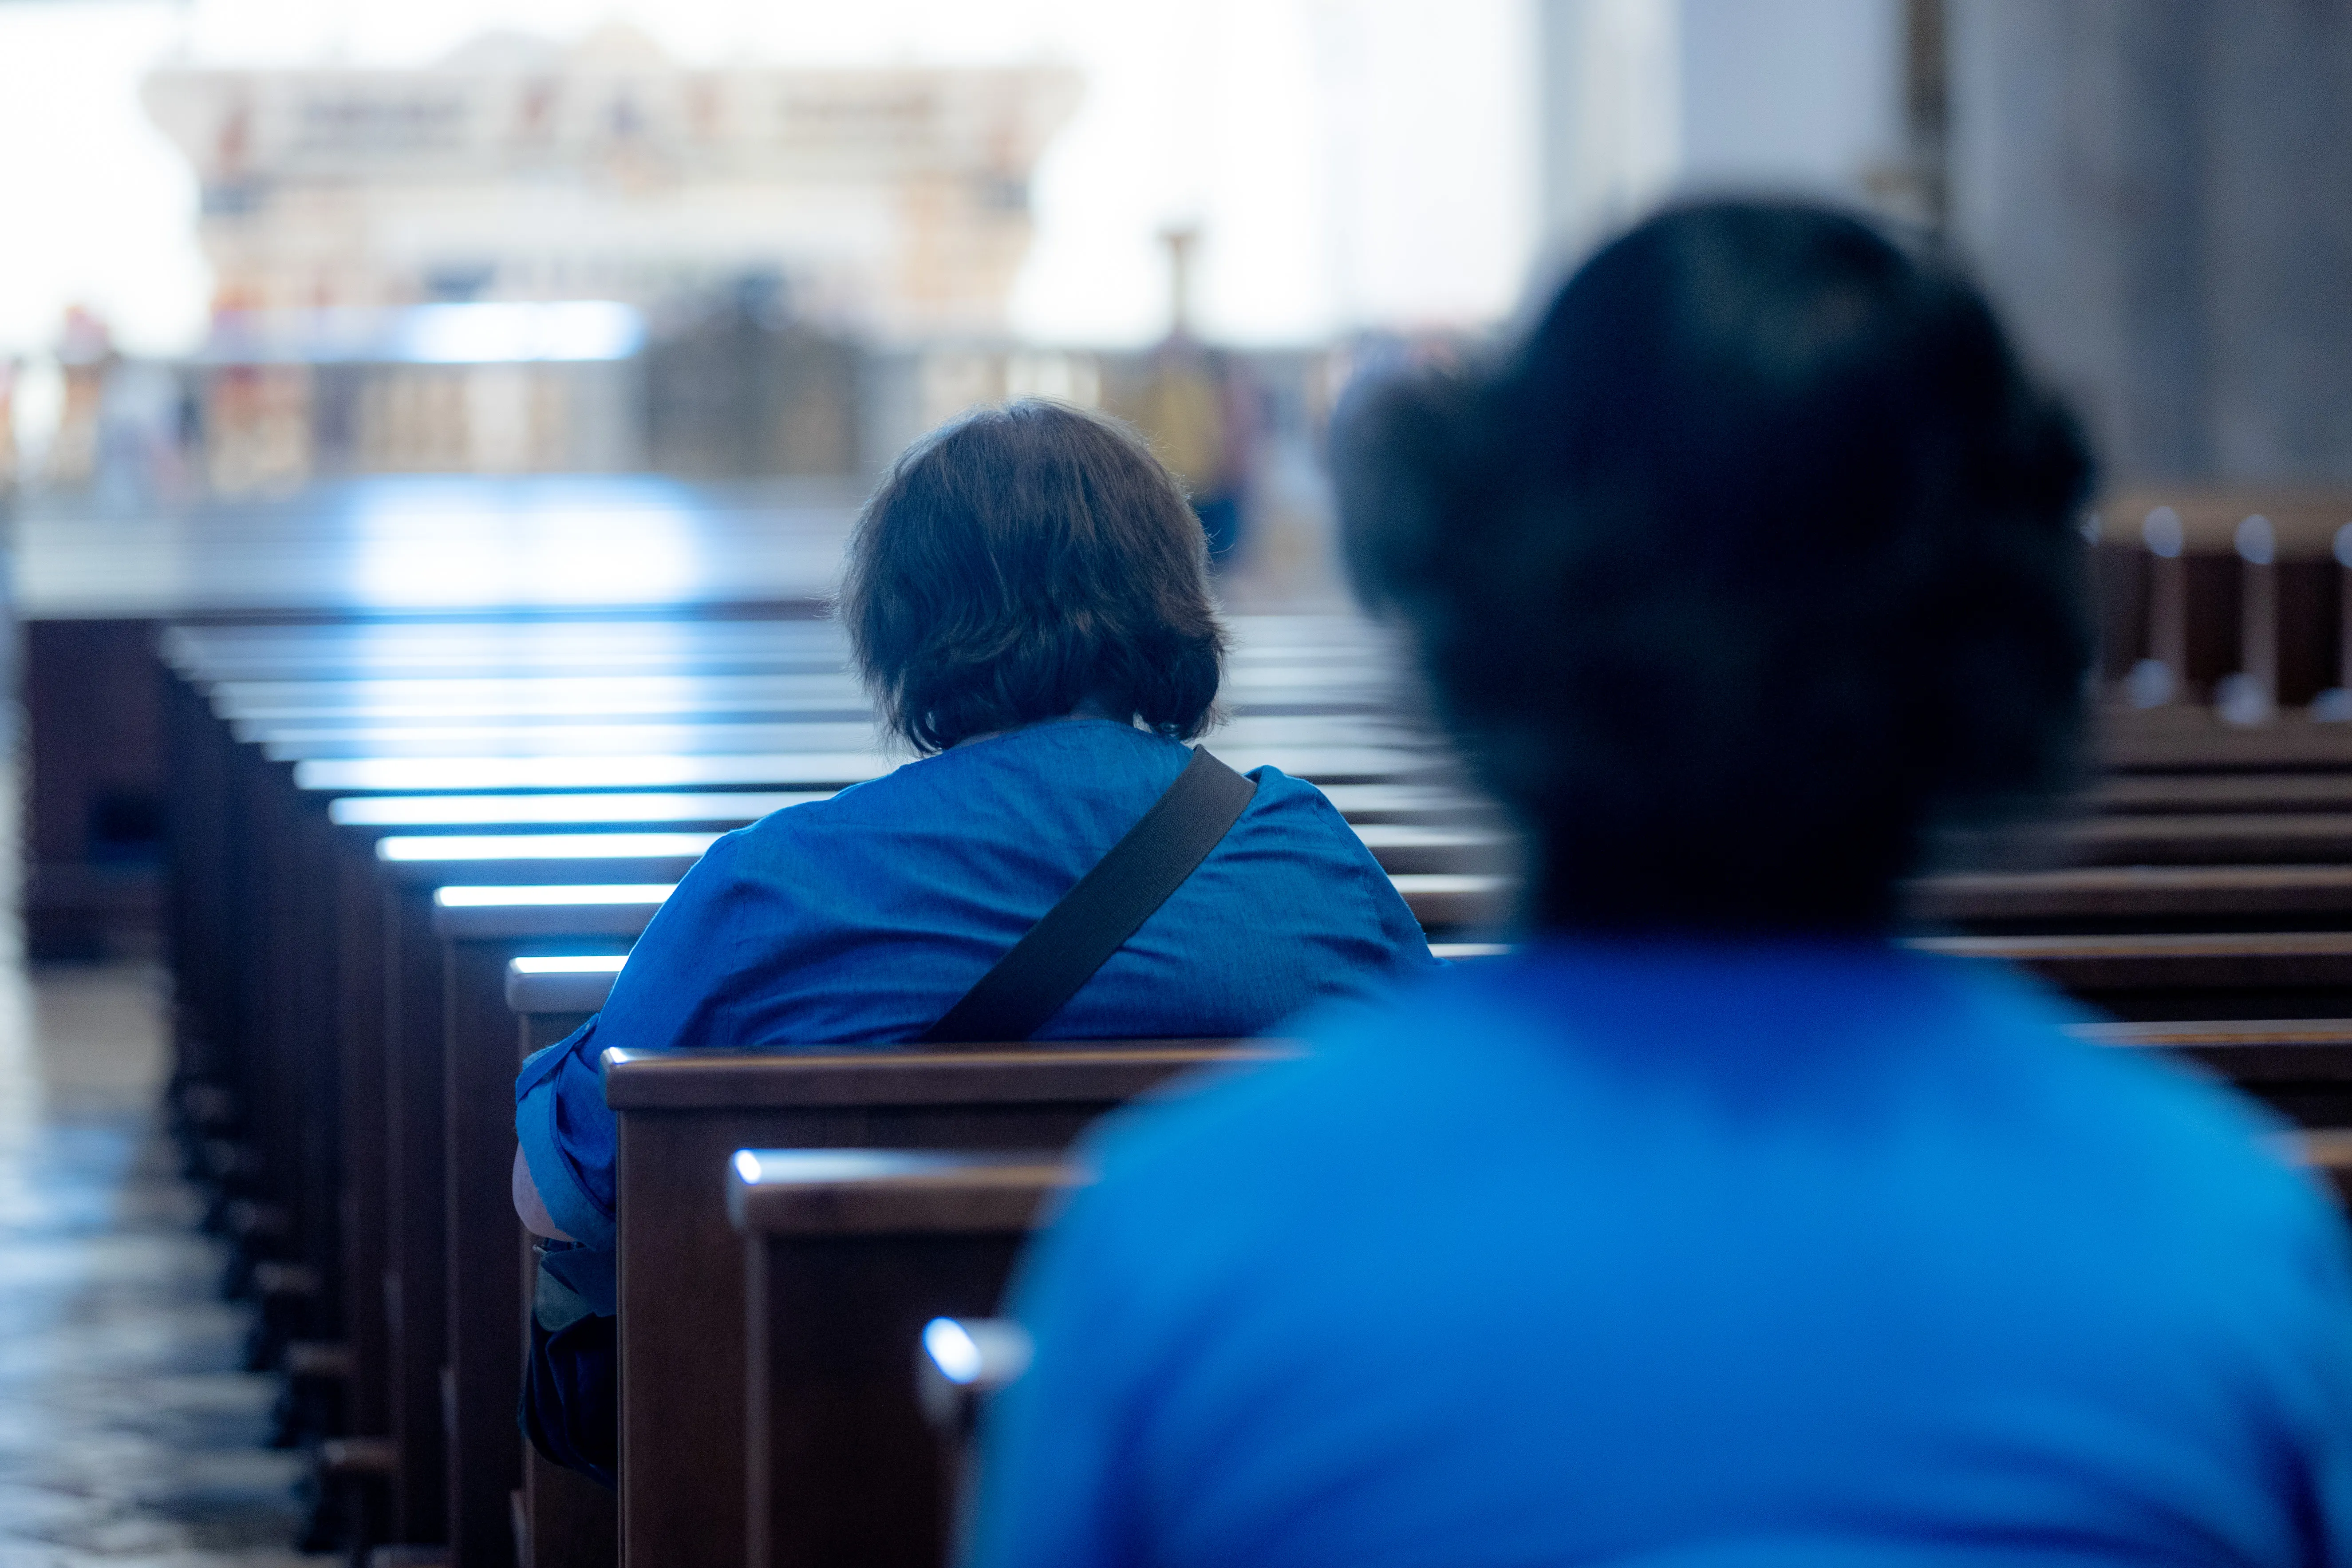 Women are praying in the basilica in L'Aquila in August 2022. Daniel Ibáñez / CNA